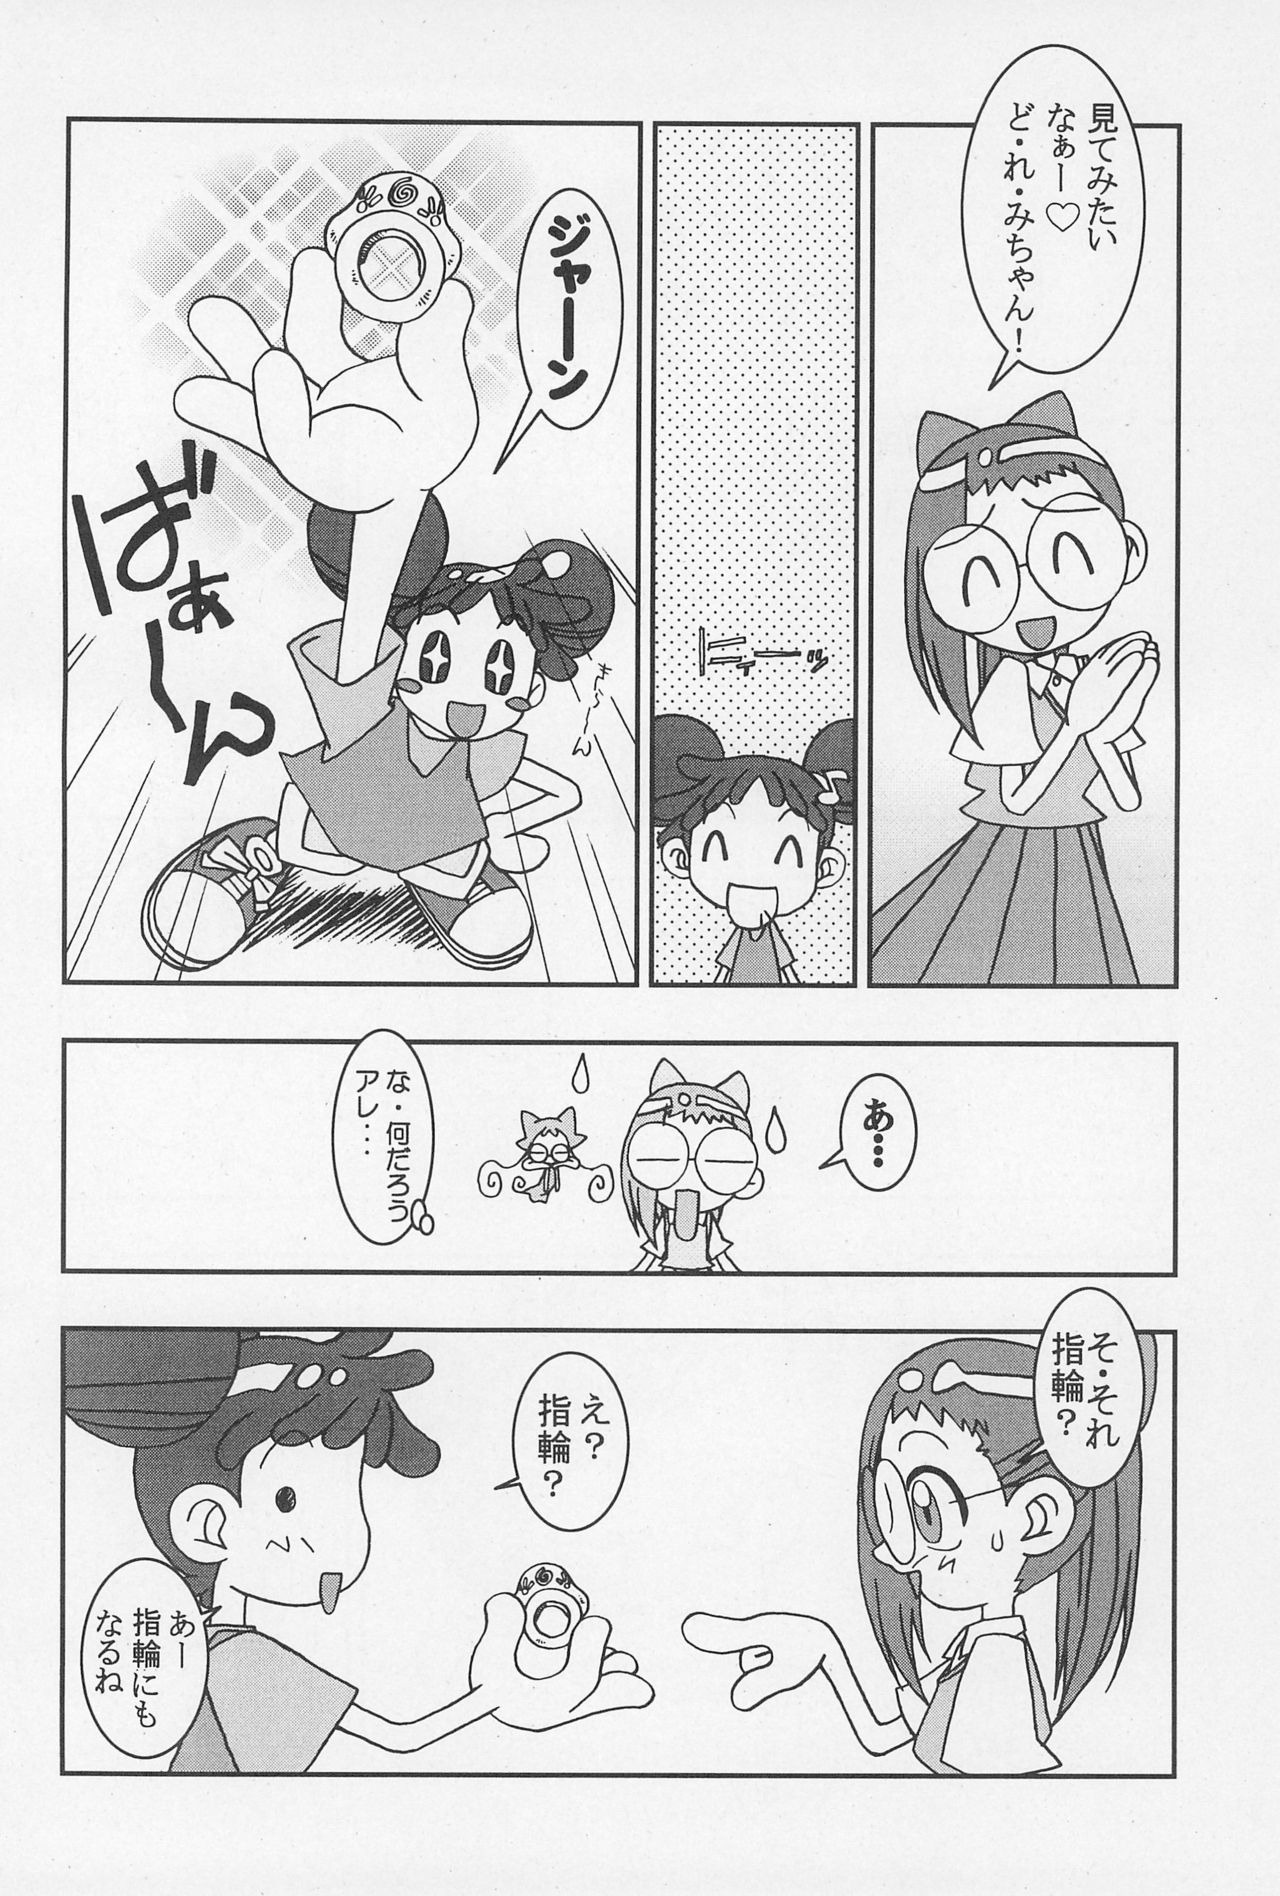 (CR25) [Nekketsu Kouenji Housoukyoku, KENIX (Katori Youichi, Ninnin!)] Doremi Fa So La Si Do (Ojamajo Doremi) page 6 full